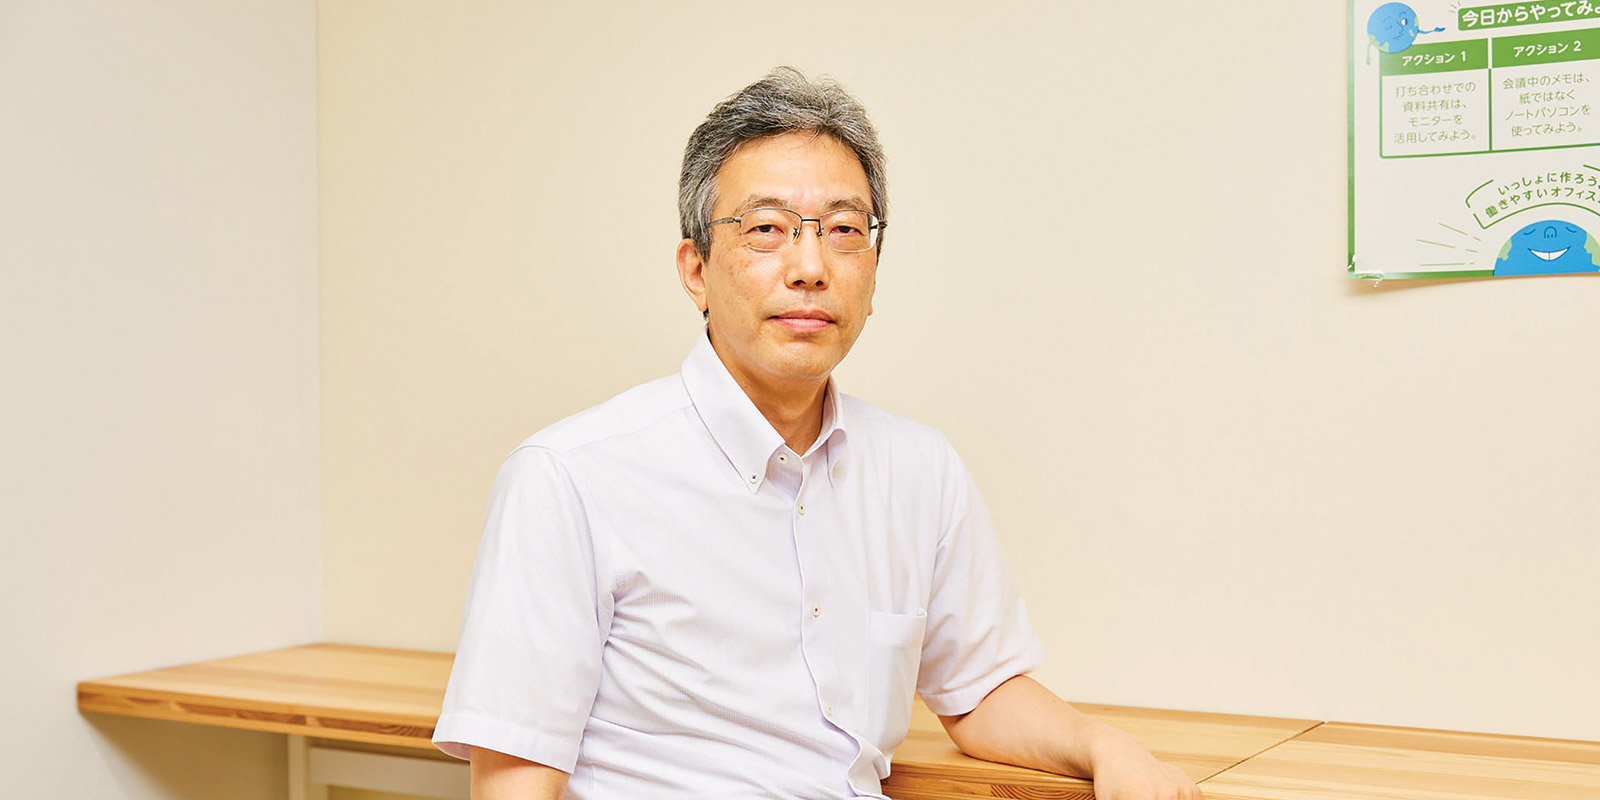 Hiroshi Ono | Kisa Toyoshima